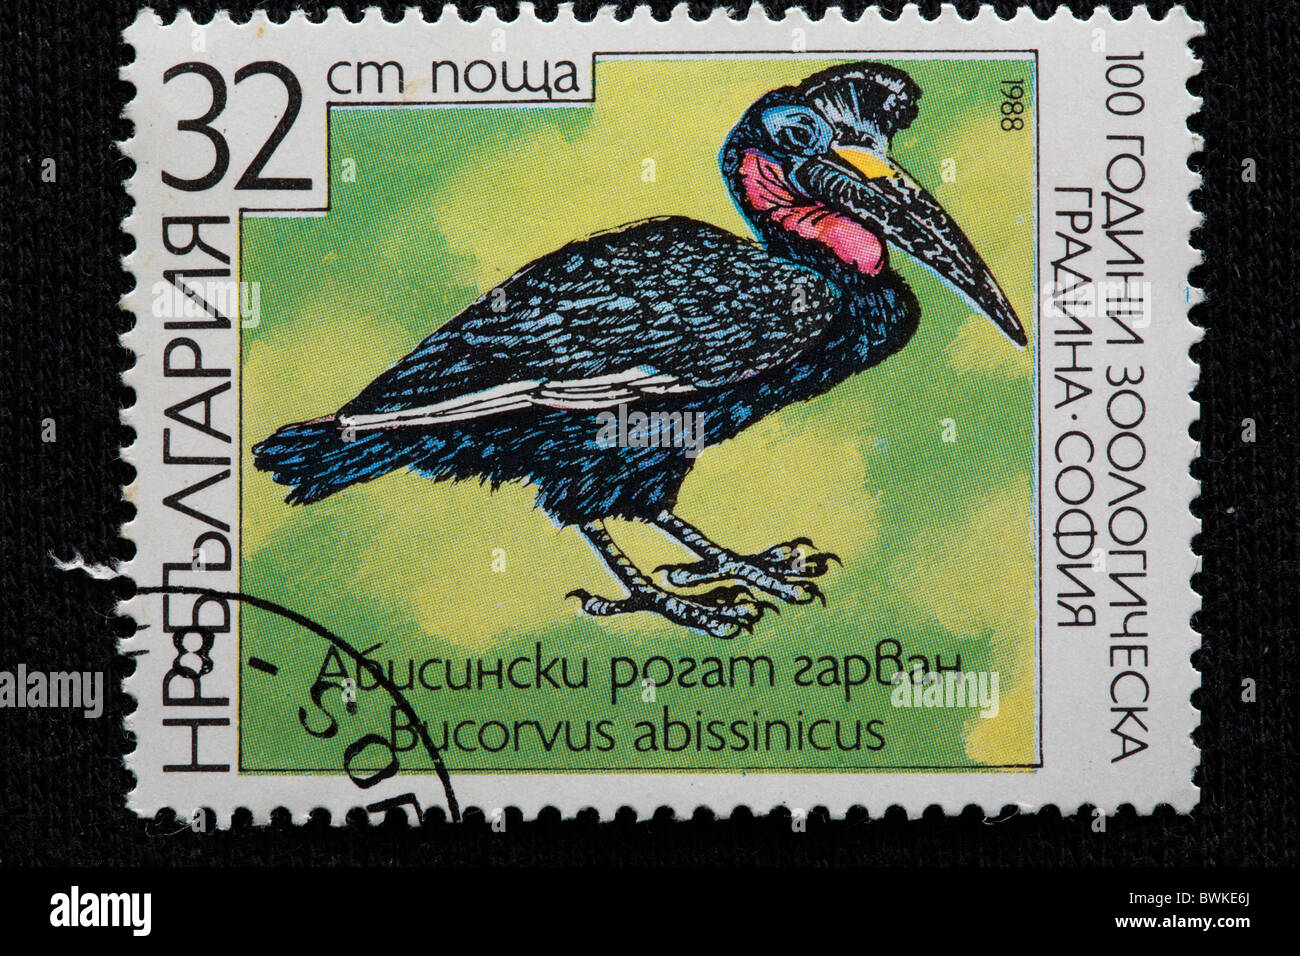 Abisinio tierra-tierra-Norte de Bucero Bucorvus abyssinicus bucero Bulgaria 1988 grabado de sellos Foto de stock